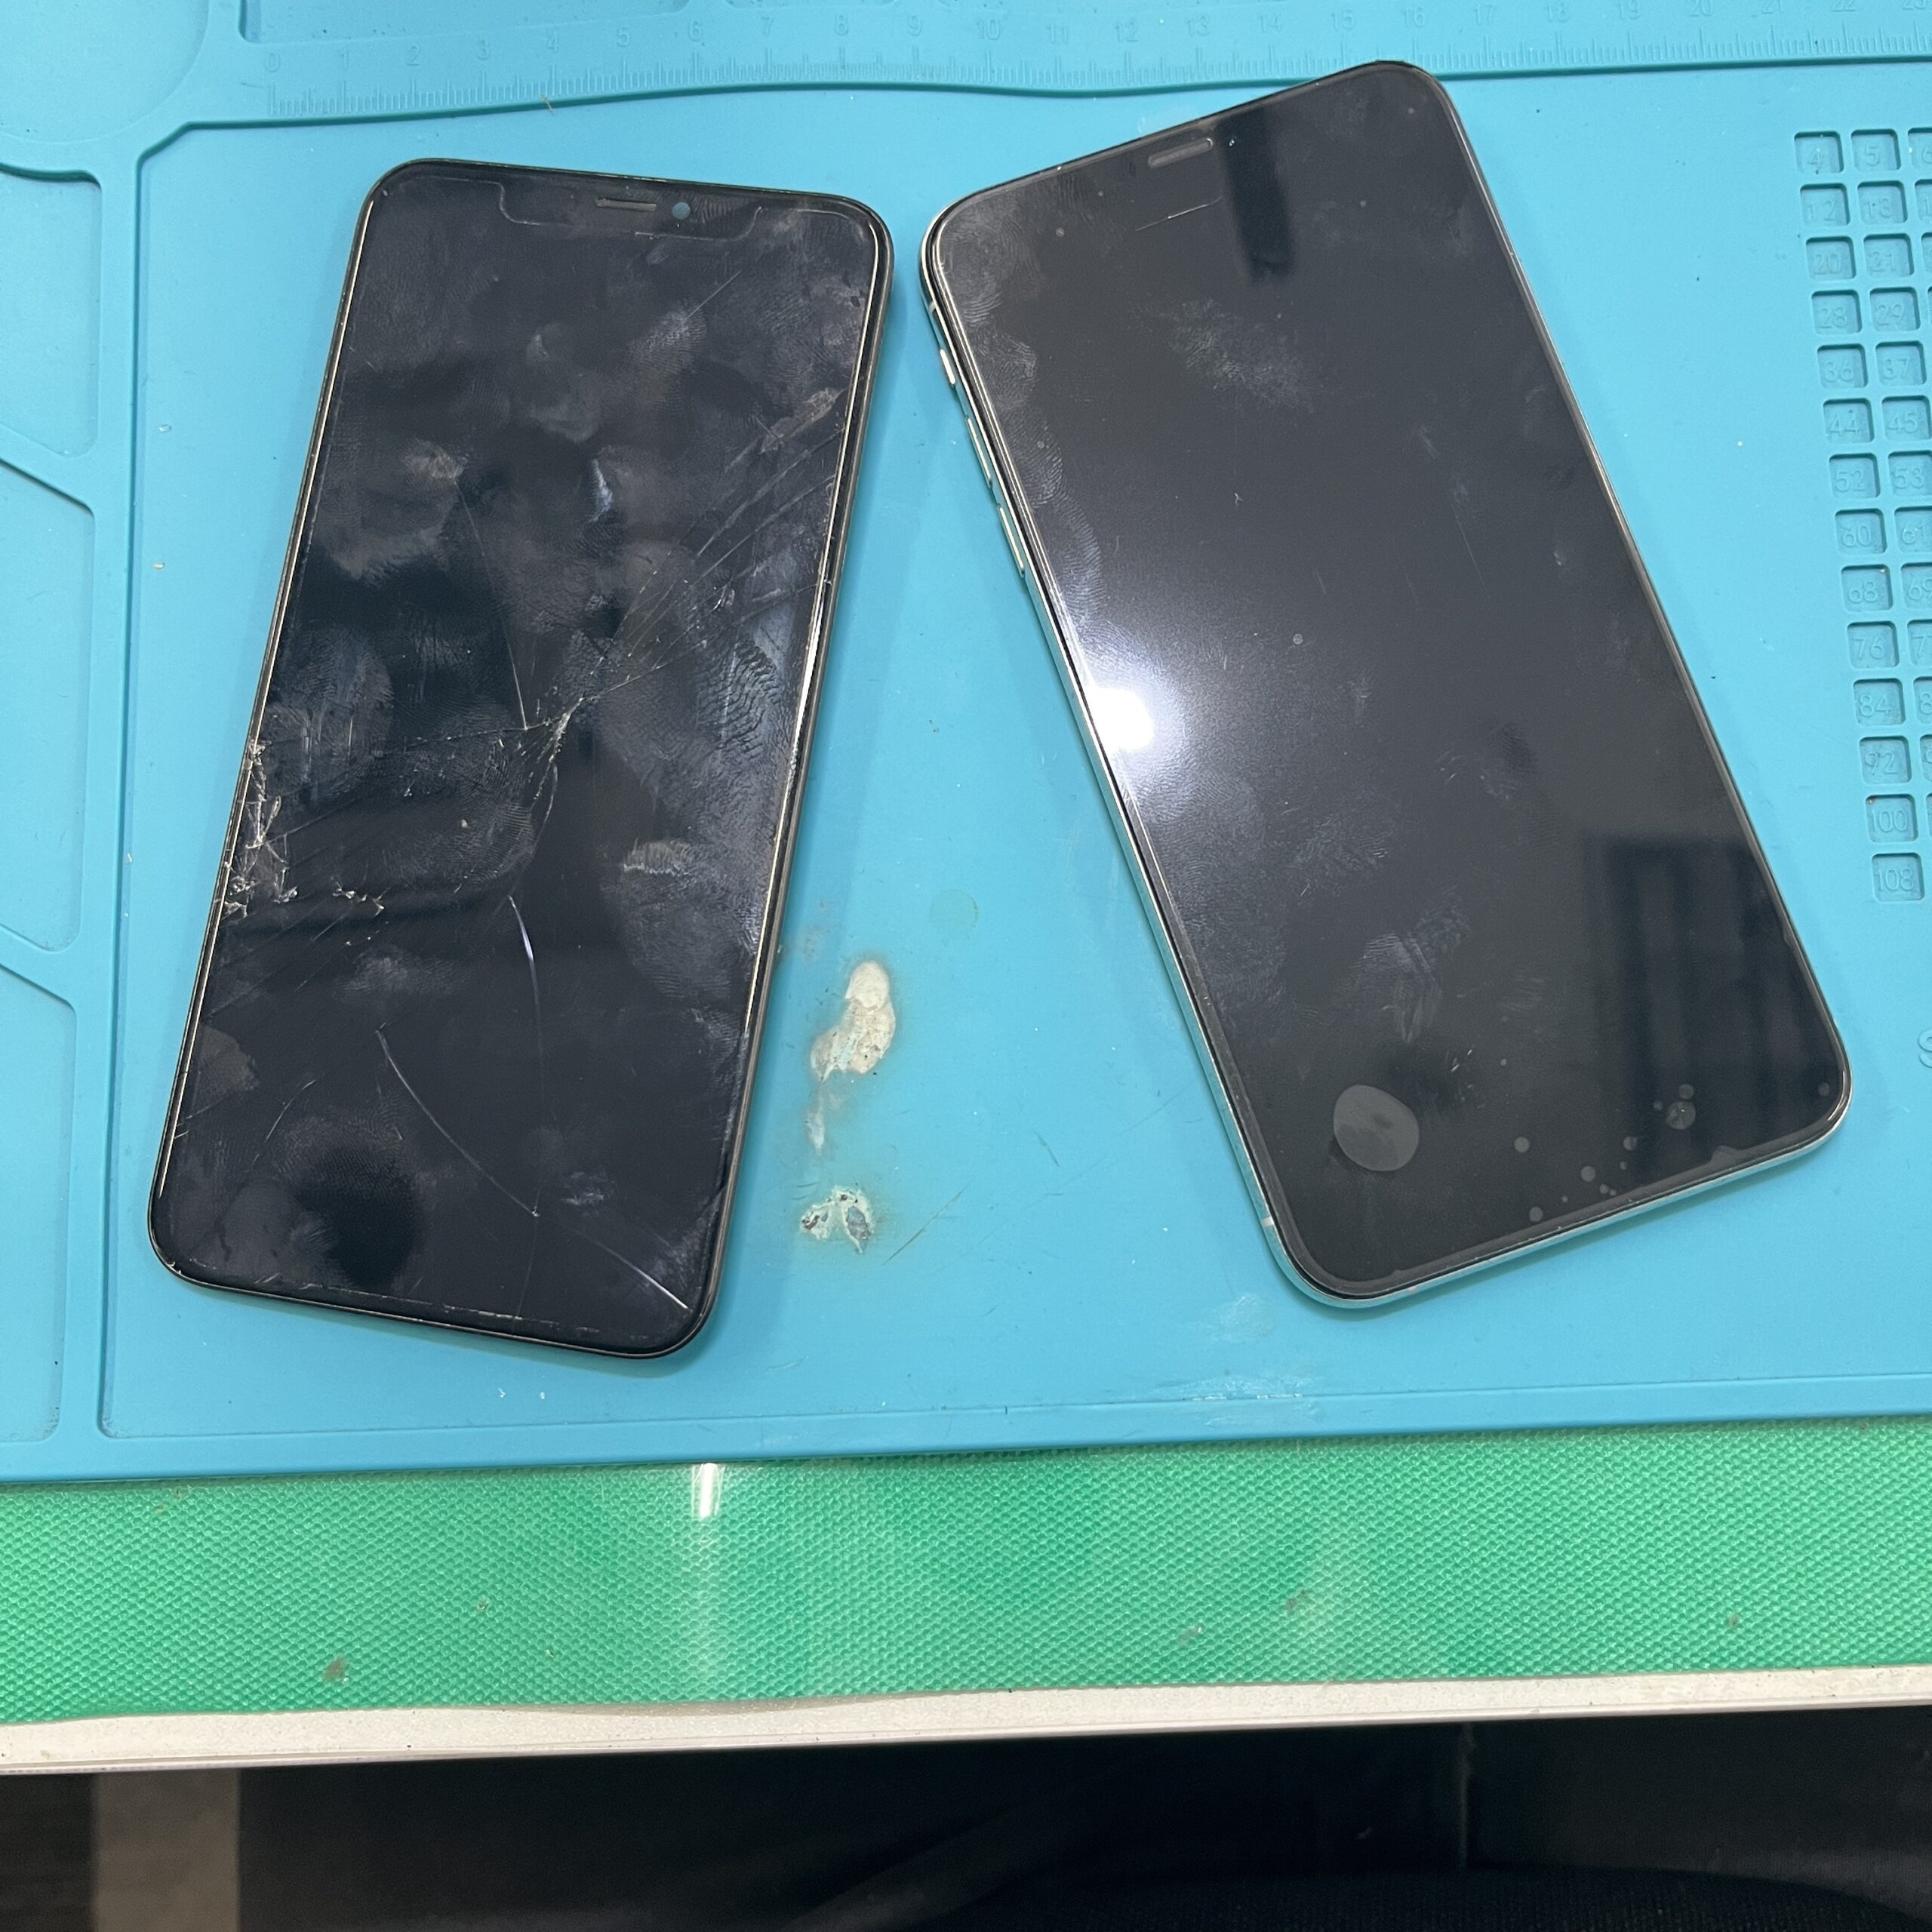 成東店：iPhone XS Max 軽度画面交換 即日修理対応いたしました。山武市内よりお越しのお客様